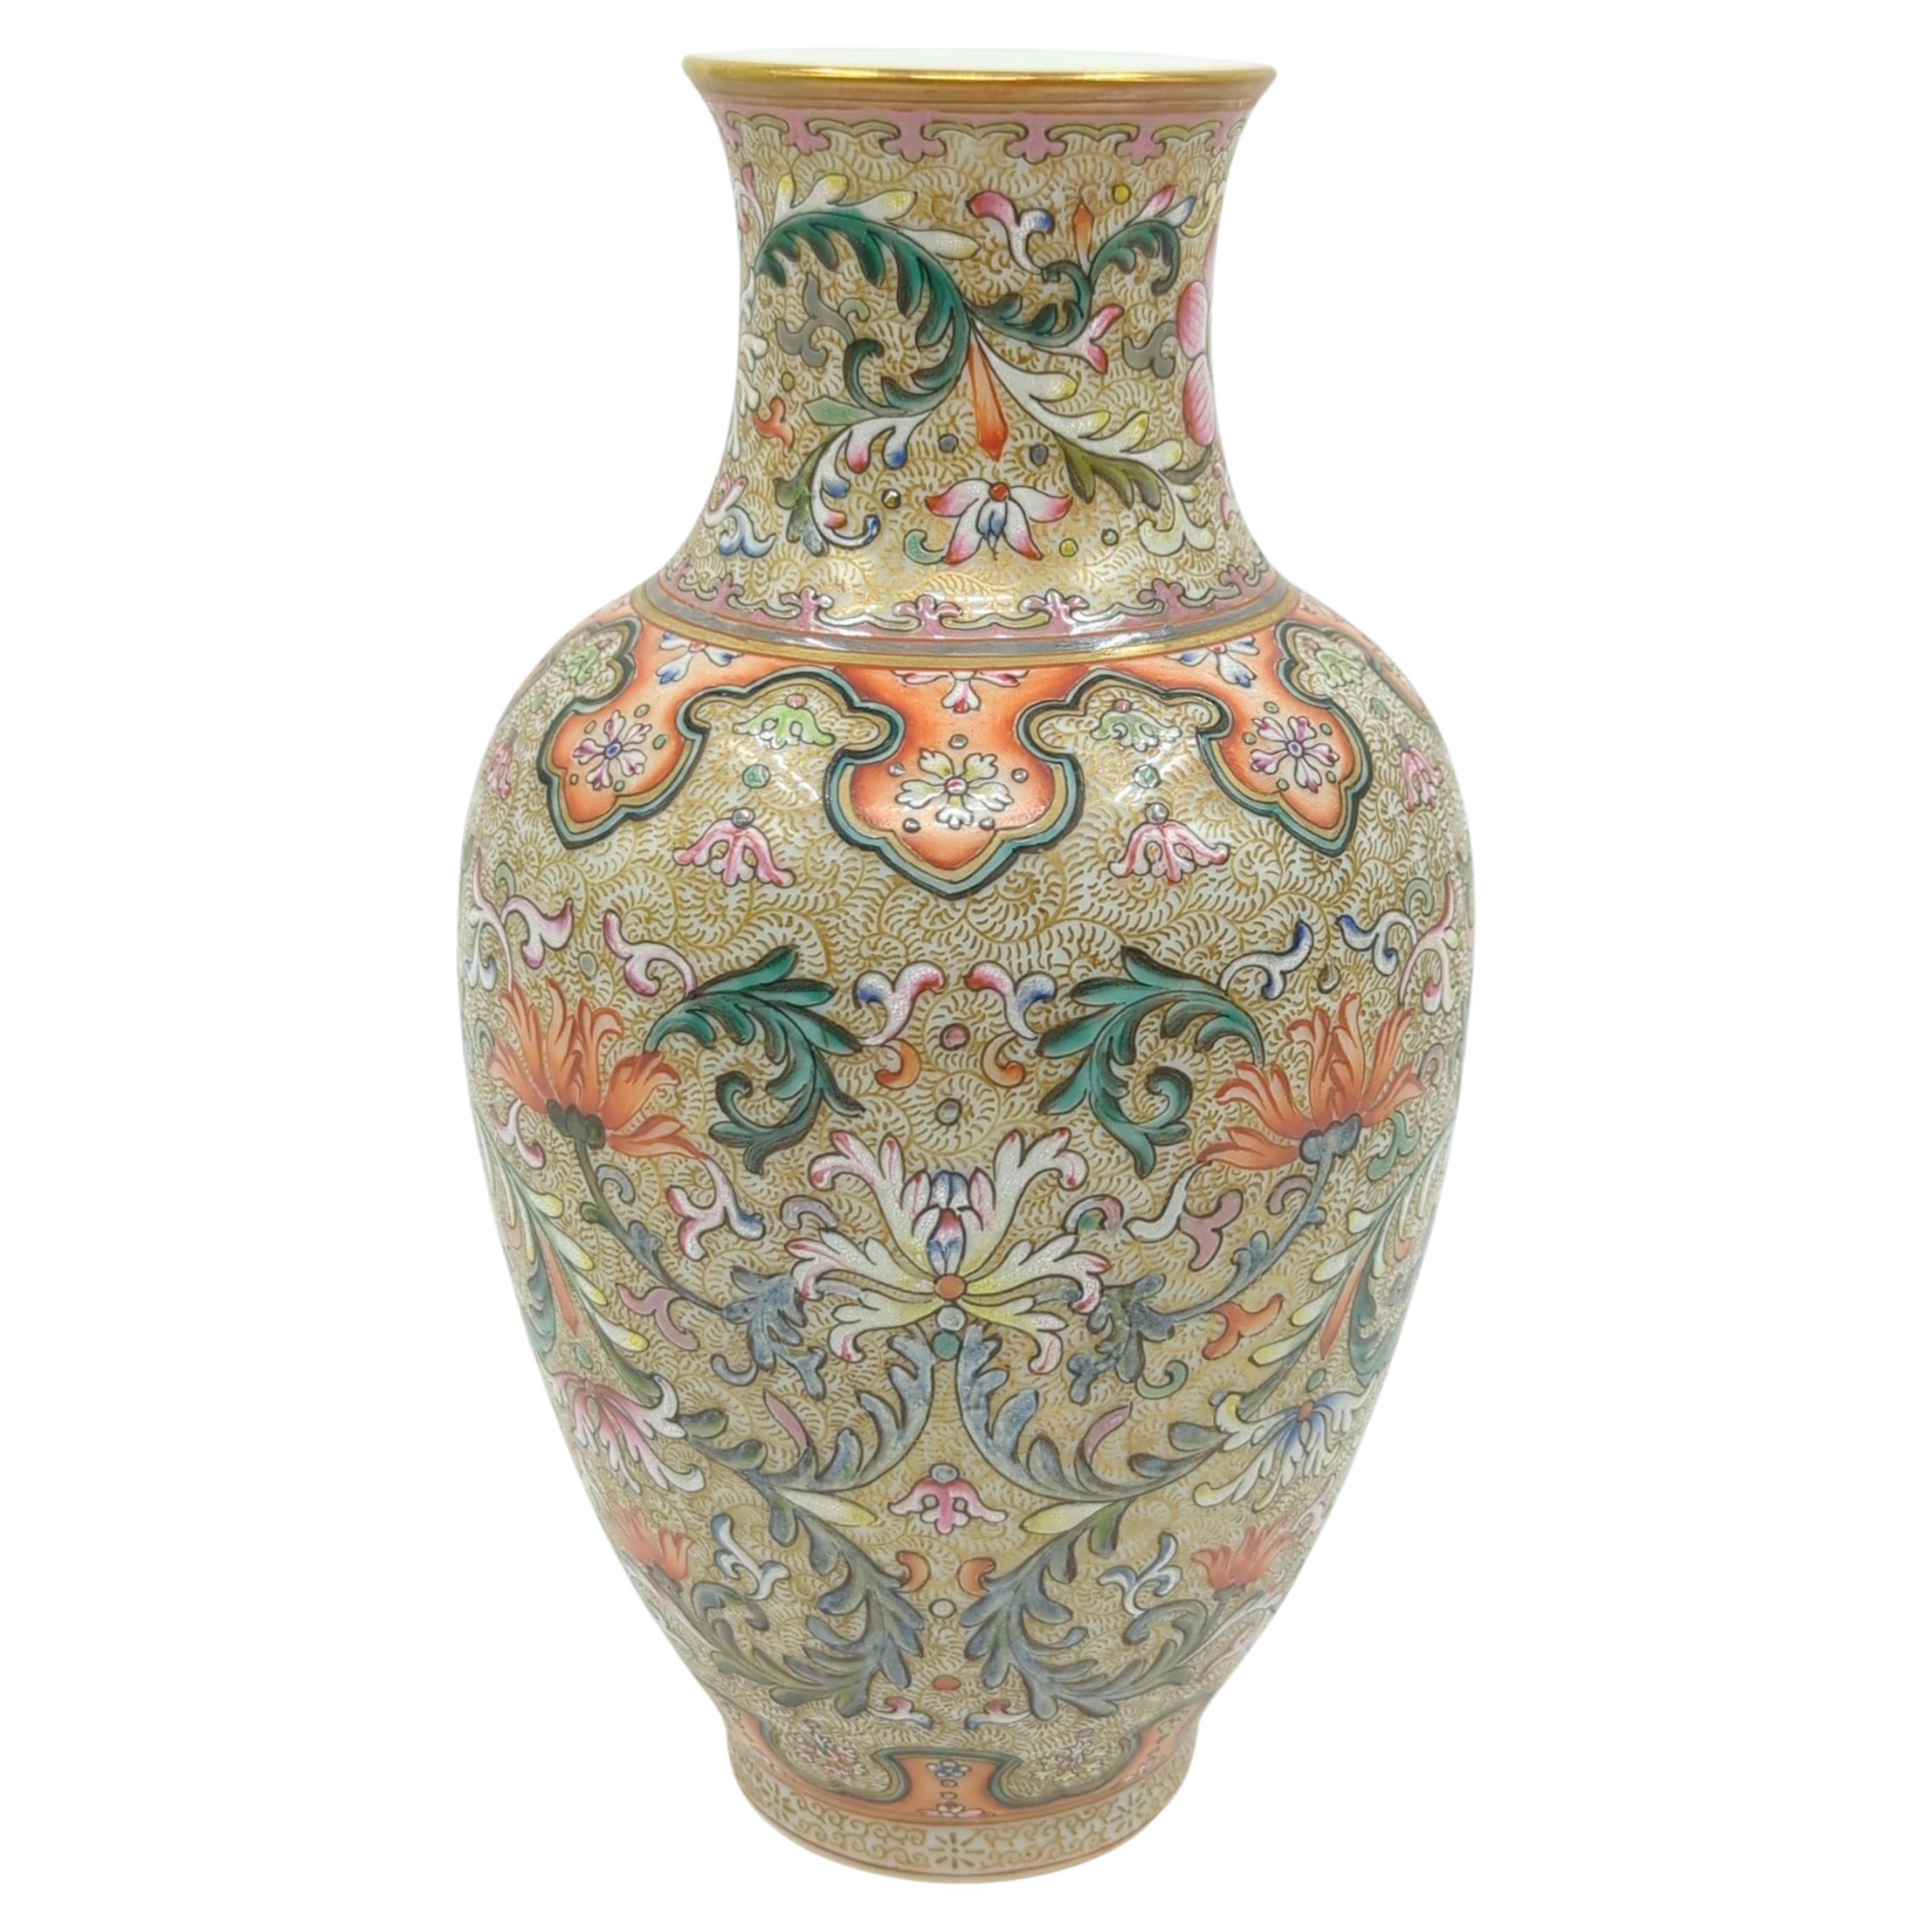 Eine außergewöhnliche Balustervase aus chinesischem Porzellan, ein Zeugnis für die komplizierte Handwerkskunst und die künstlerische Meisterschaft der traditionellen chinesischen Keramik. Die Vase ist gut getöpfert und zeichnet sich durch ein